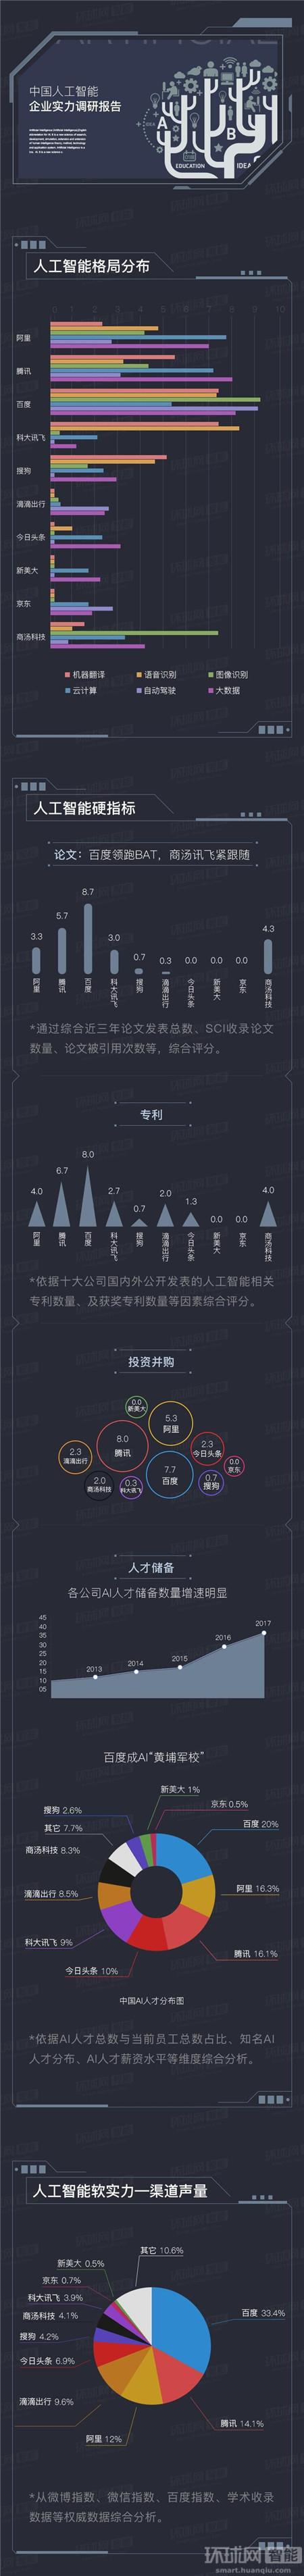 《2017年中国人工智能企业实力调研报告》：百度领跑